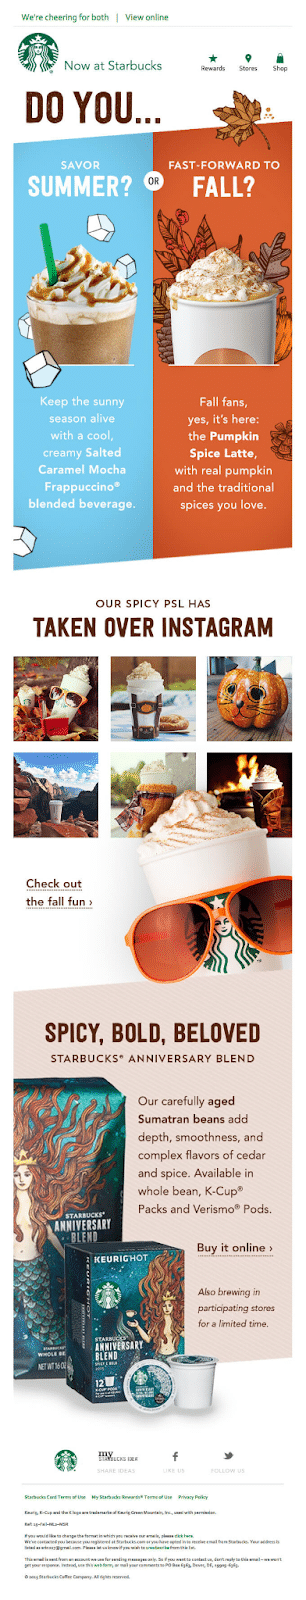 Newsletter de Starbucks annonçant les produits d'automne.